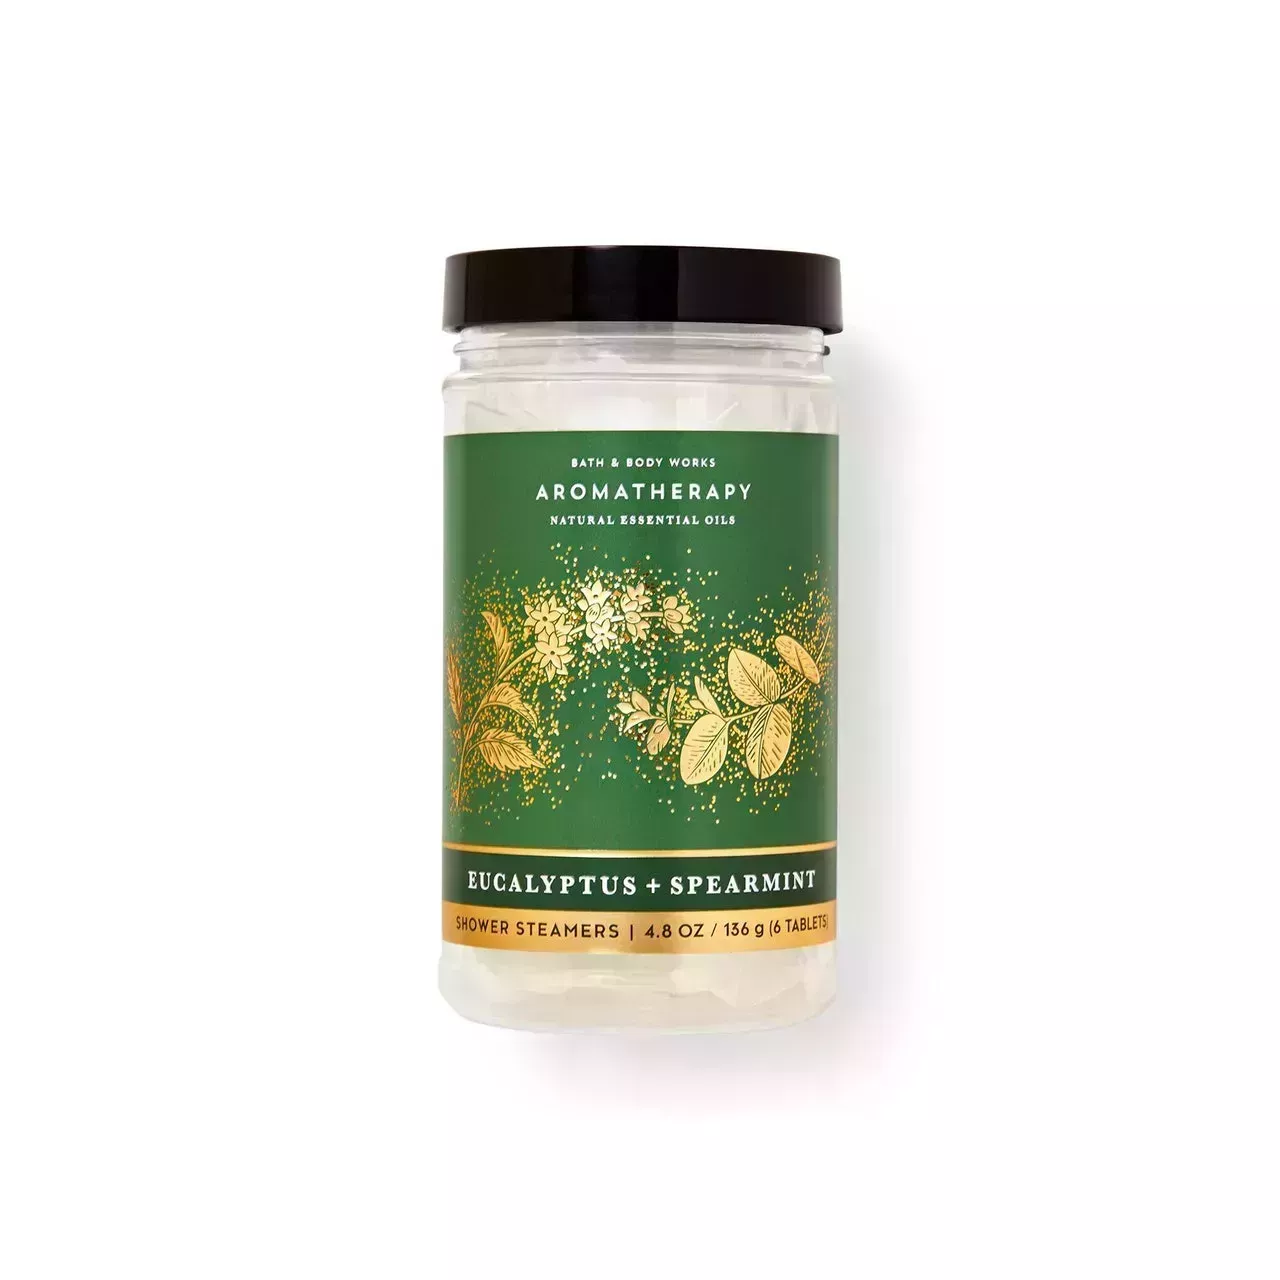 Bath & Body Works Aromatherapy Eucalyptus Spearmint Shower Steamers in jar